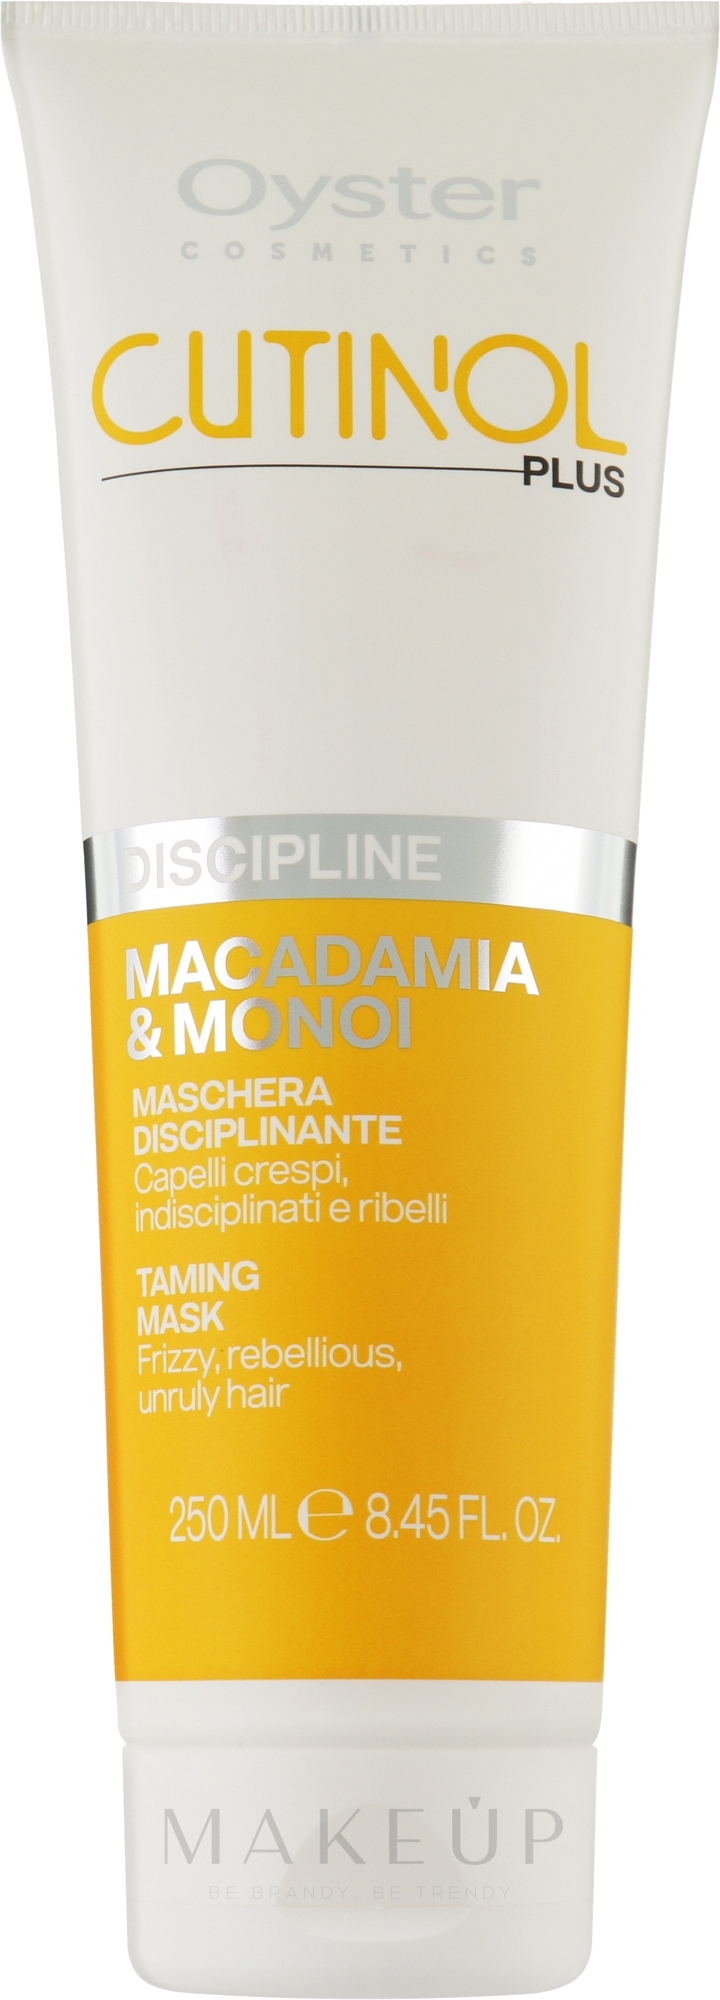 Maske für widerspenstiges Haar - Oyster Cutinol Plus Macadamia & Monoi Oil Discipline Mask — Bild 250 ml